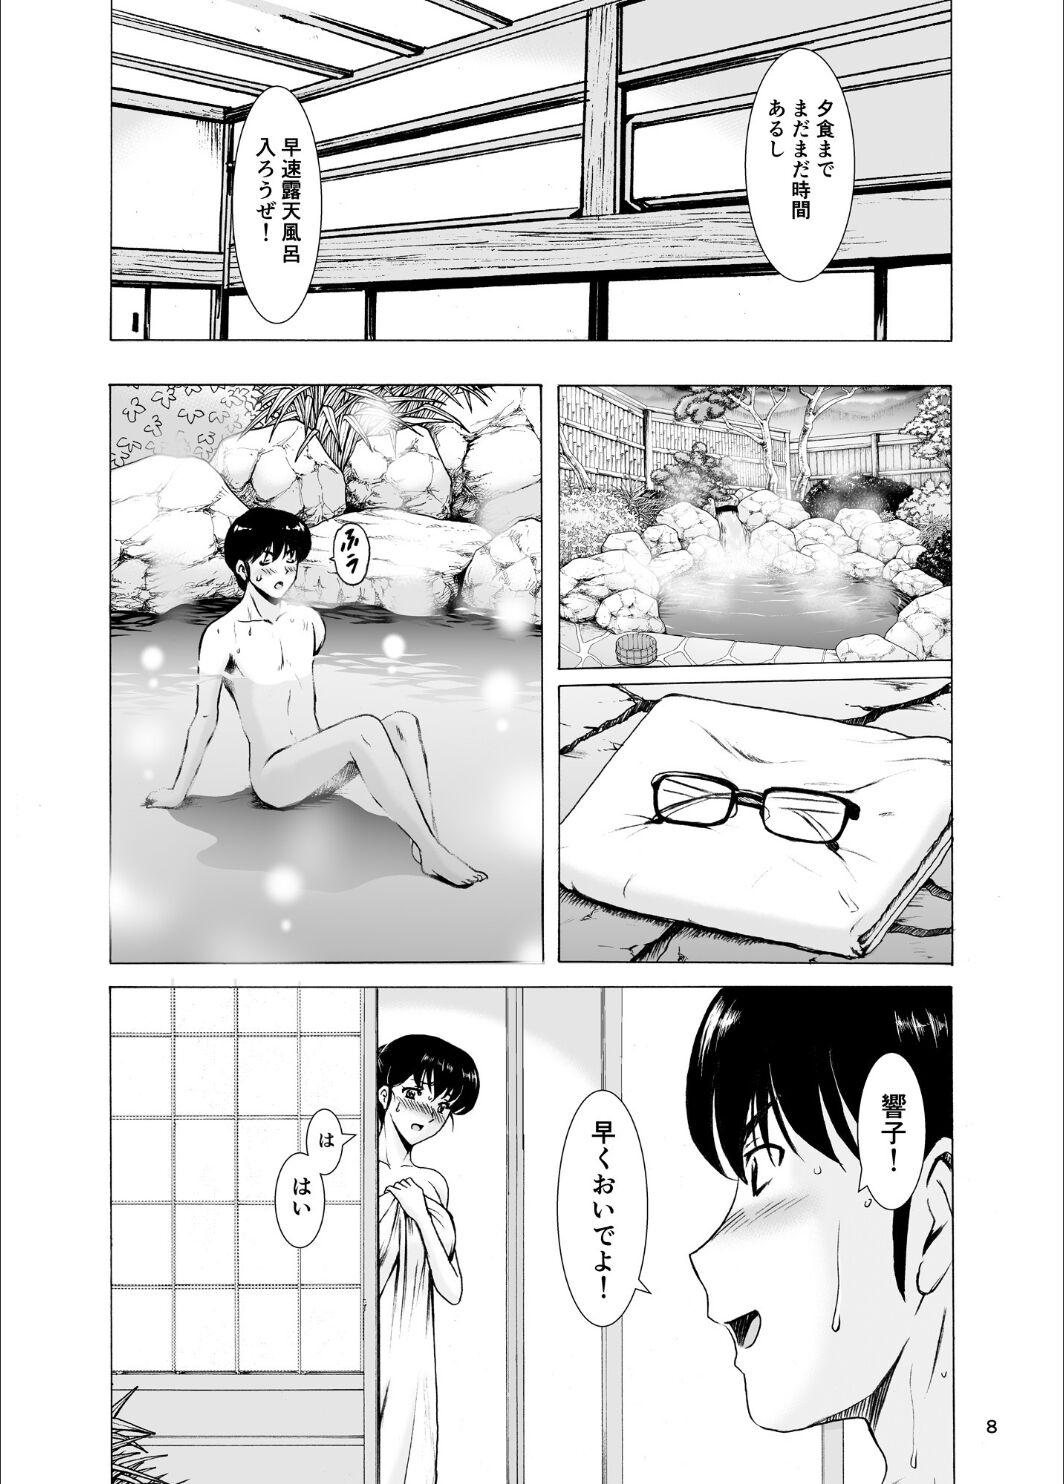 Chat Hitozuma Kanrinin Kyoko 10 - Maison ikkoku Stepmother - Page 8